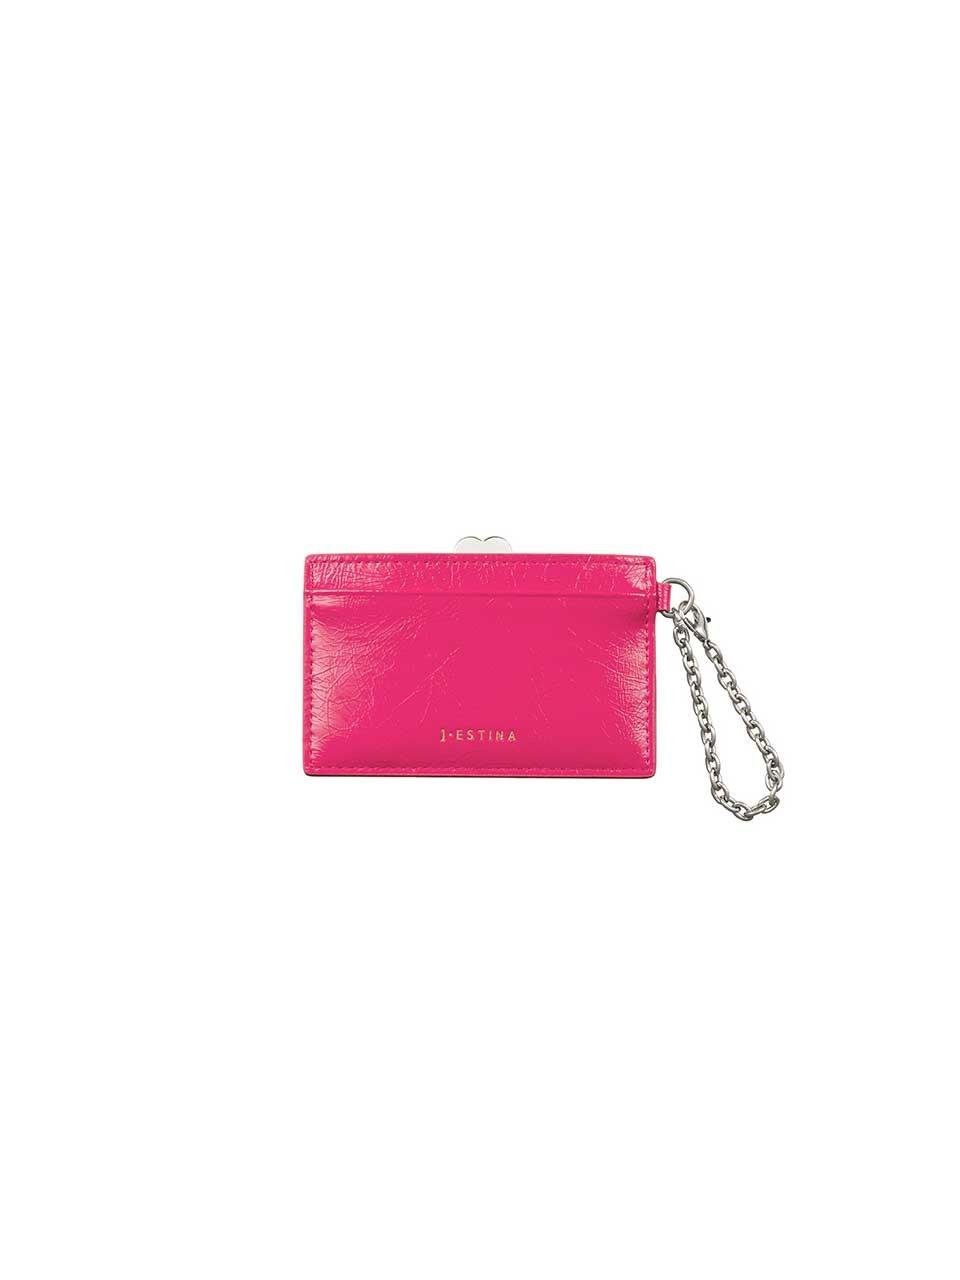 J.ESTINA Mignon Mirror Card Wallet in Pink | Lyst